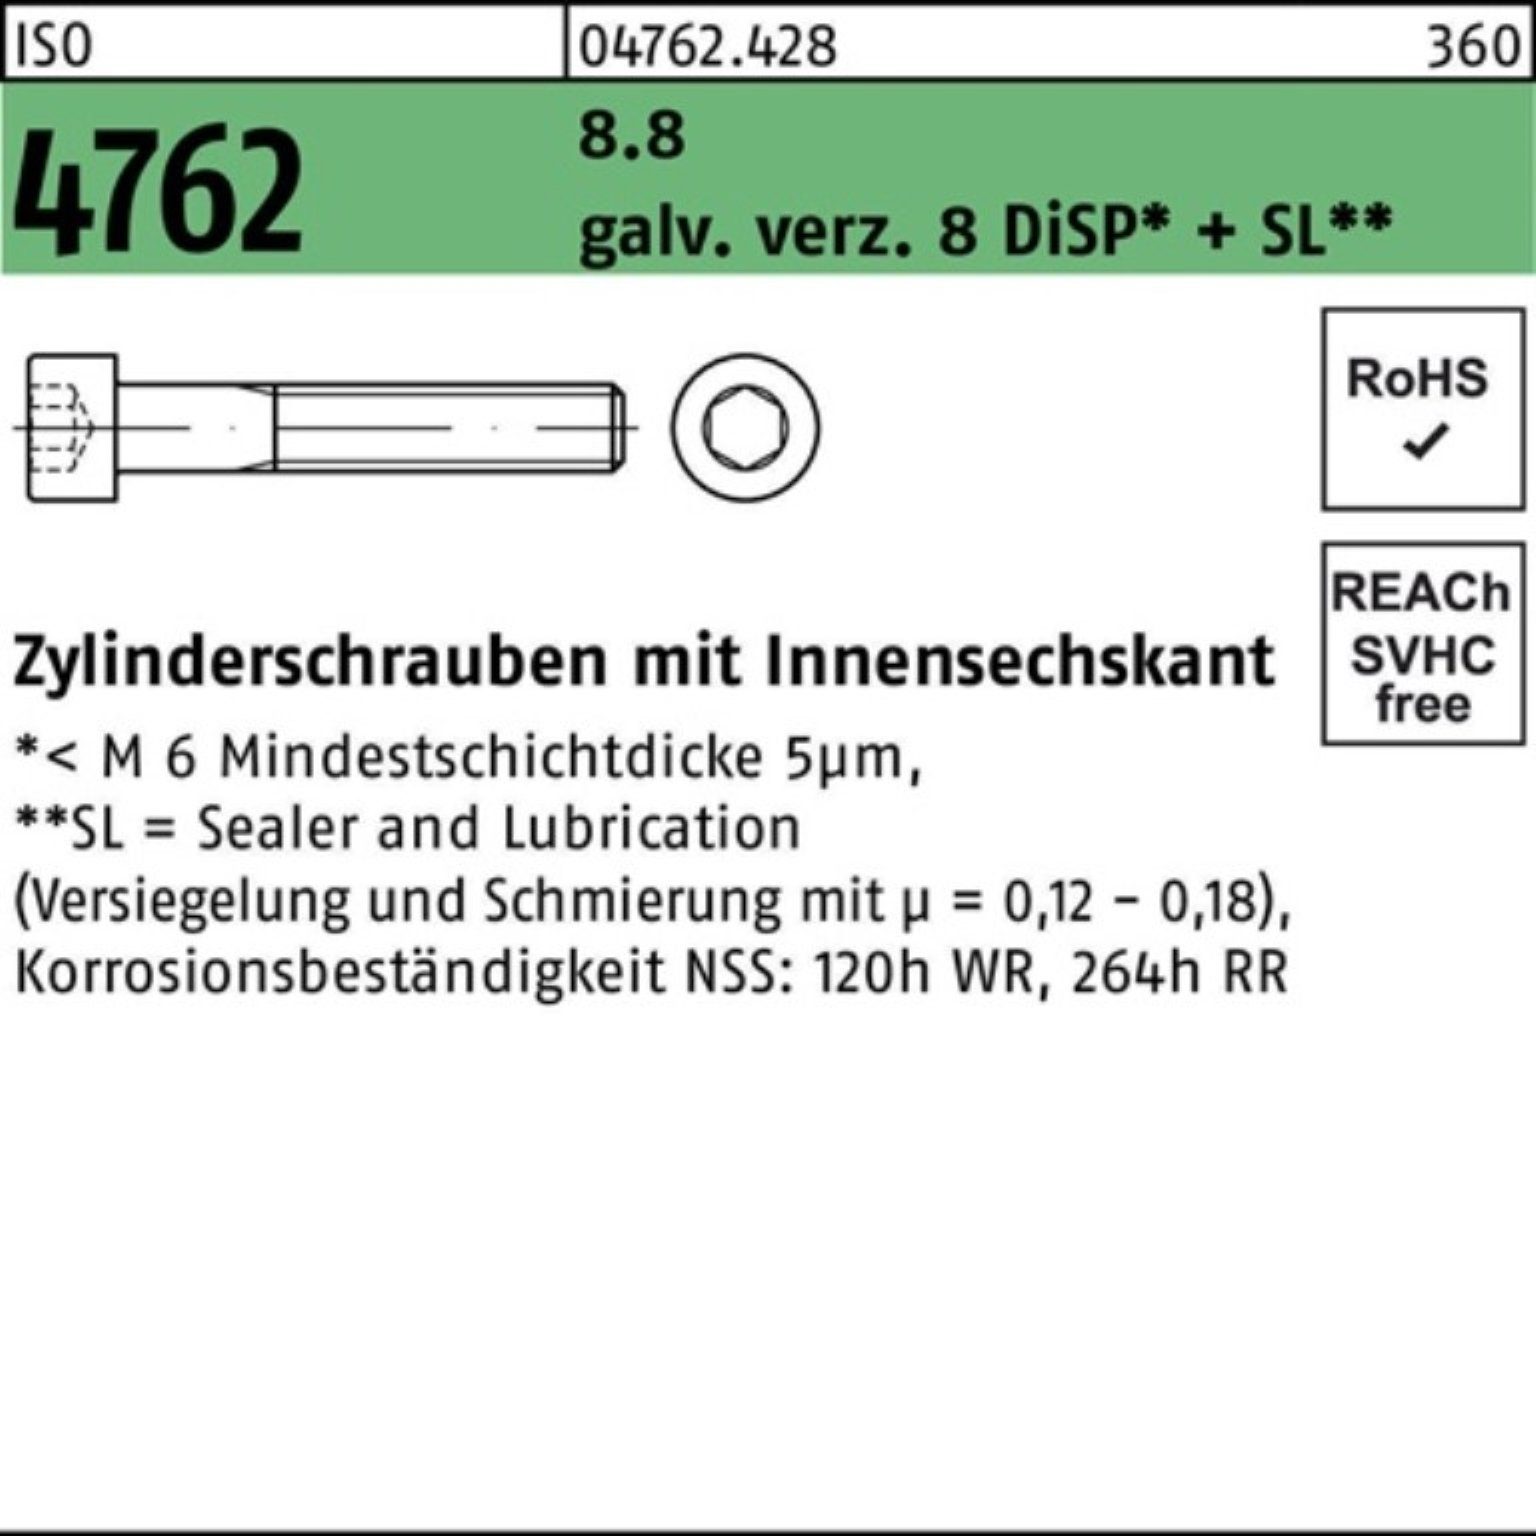 Innen-6kt Zylinderschraube 4762 Zylinderschraube 8 M10x25 galv.verz. Reyher Pack 200er ISO 8.8